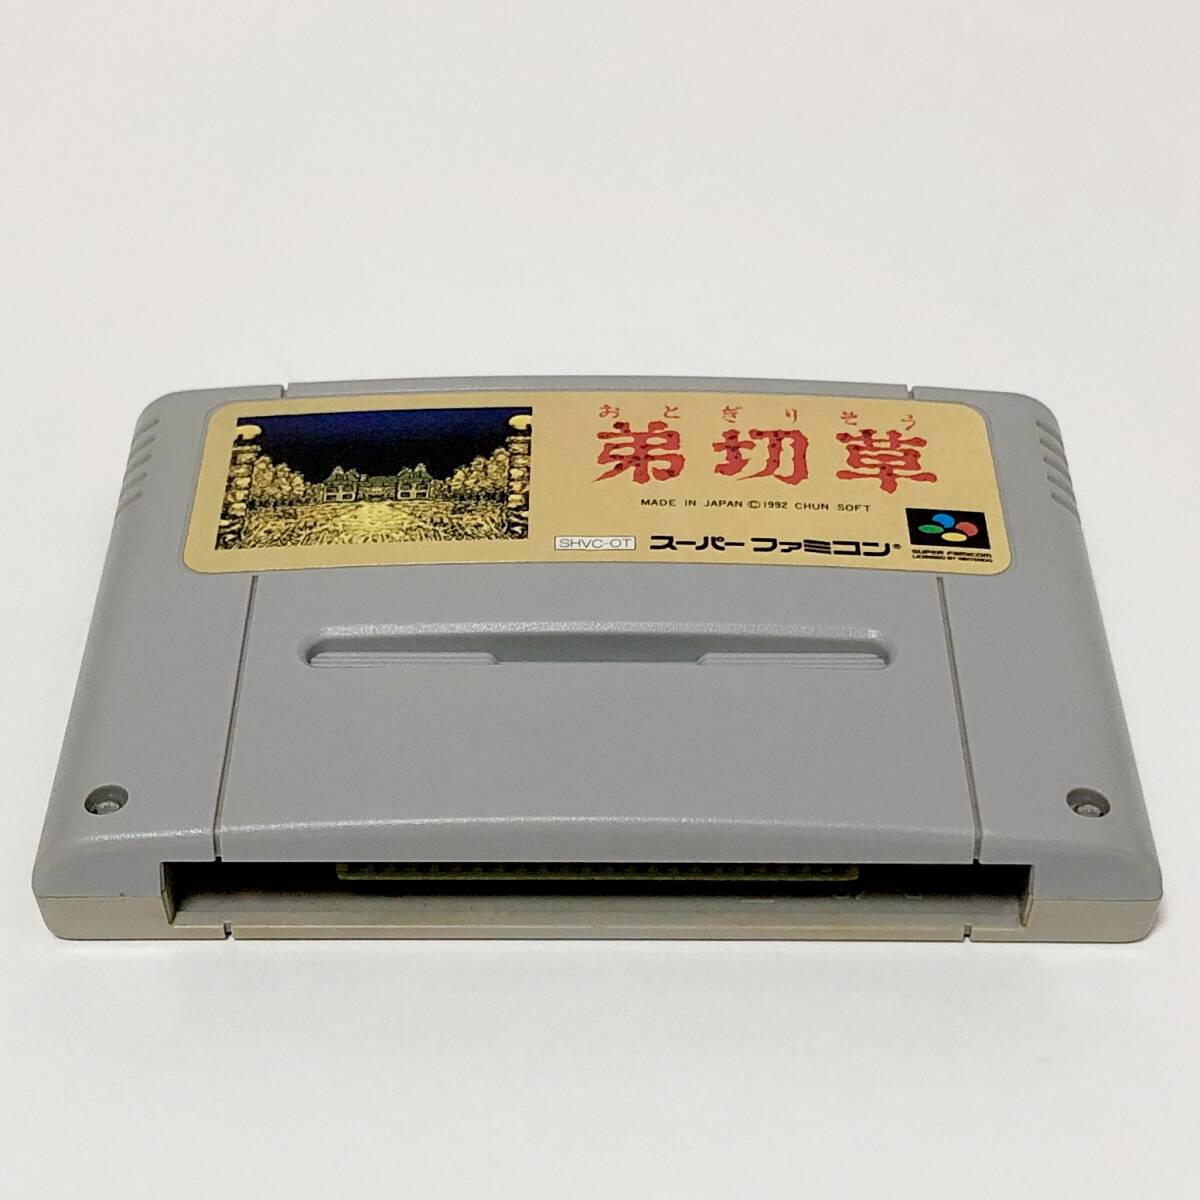 スーパーファミコン 弟切草 箱説付き 痛みあり チュンソフト Nintendo Super Famicom Sound Novel Otogirisou CIB Tested Chunsoft_画像7